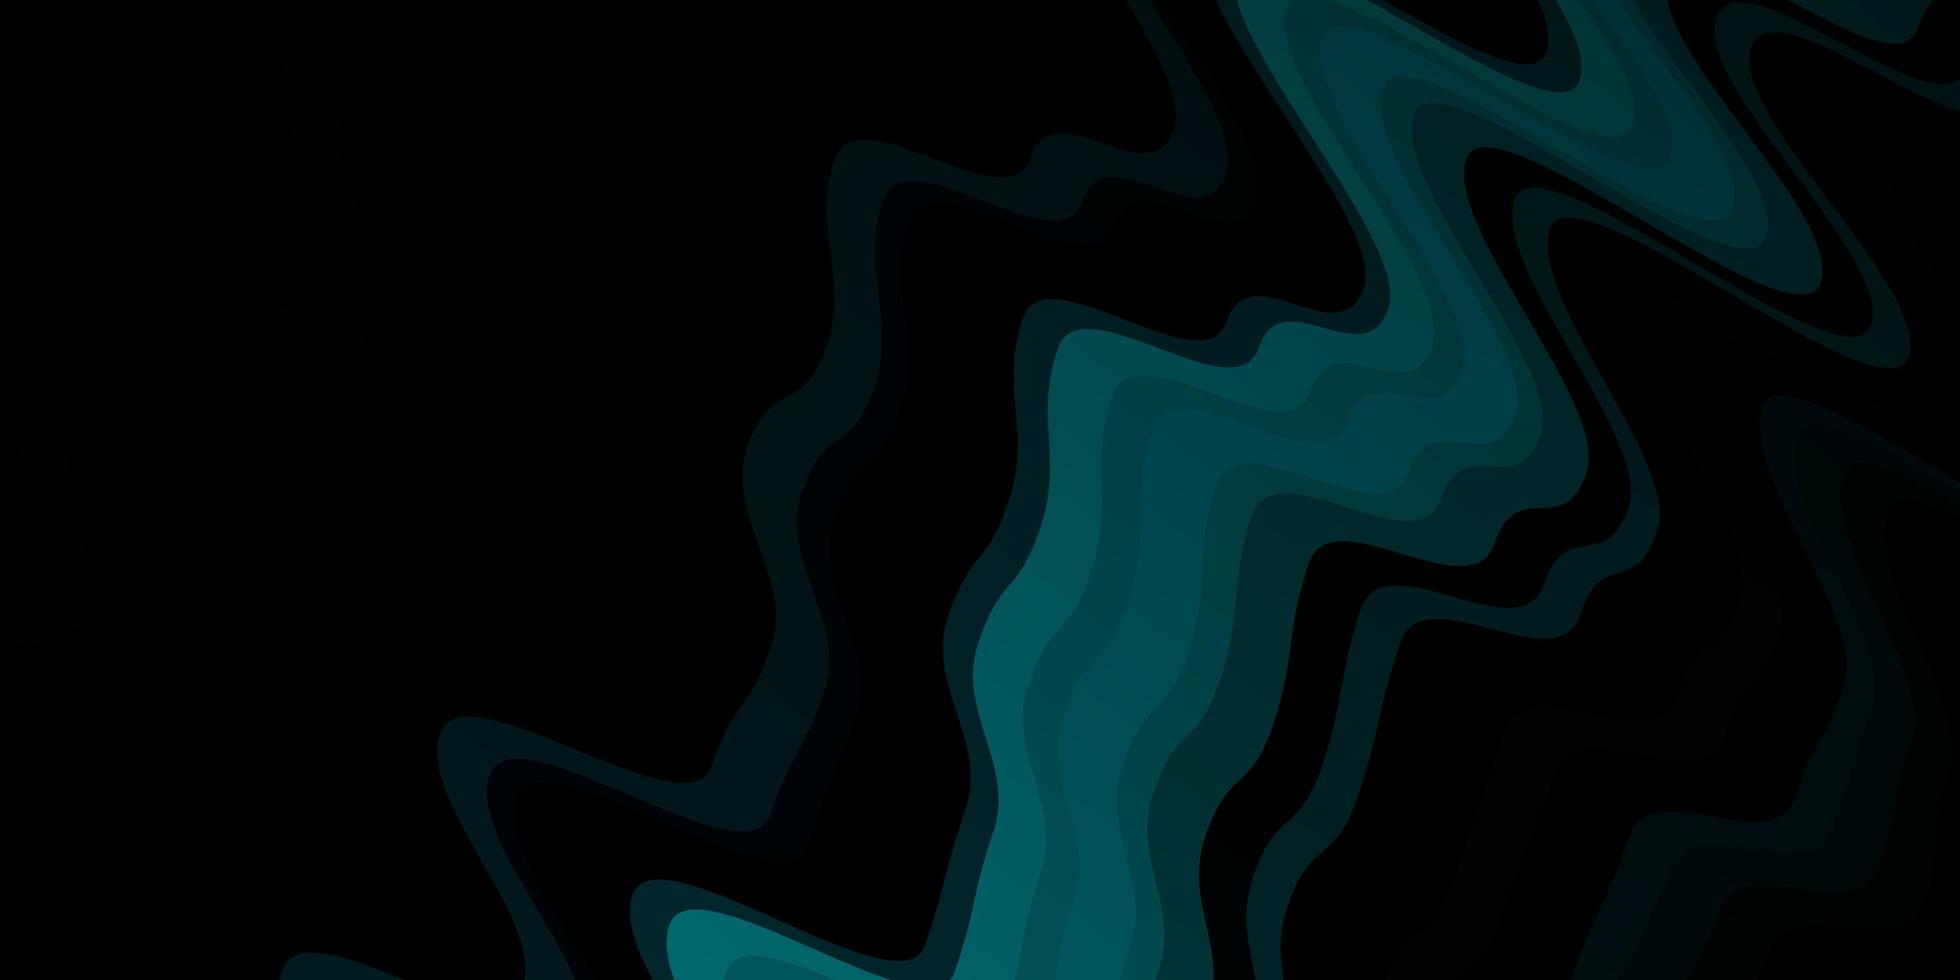 textura de vector azul oscuro con curvas